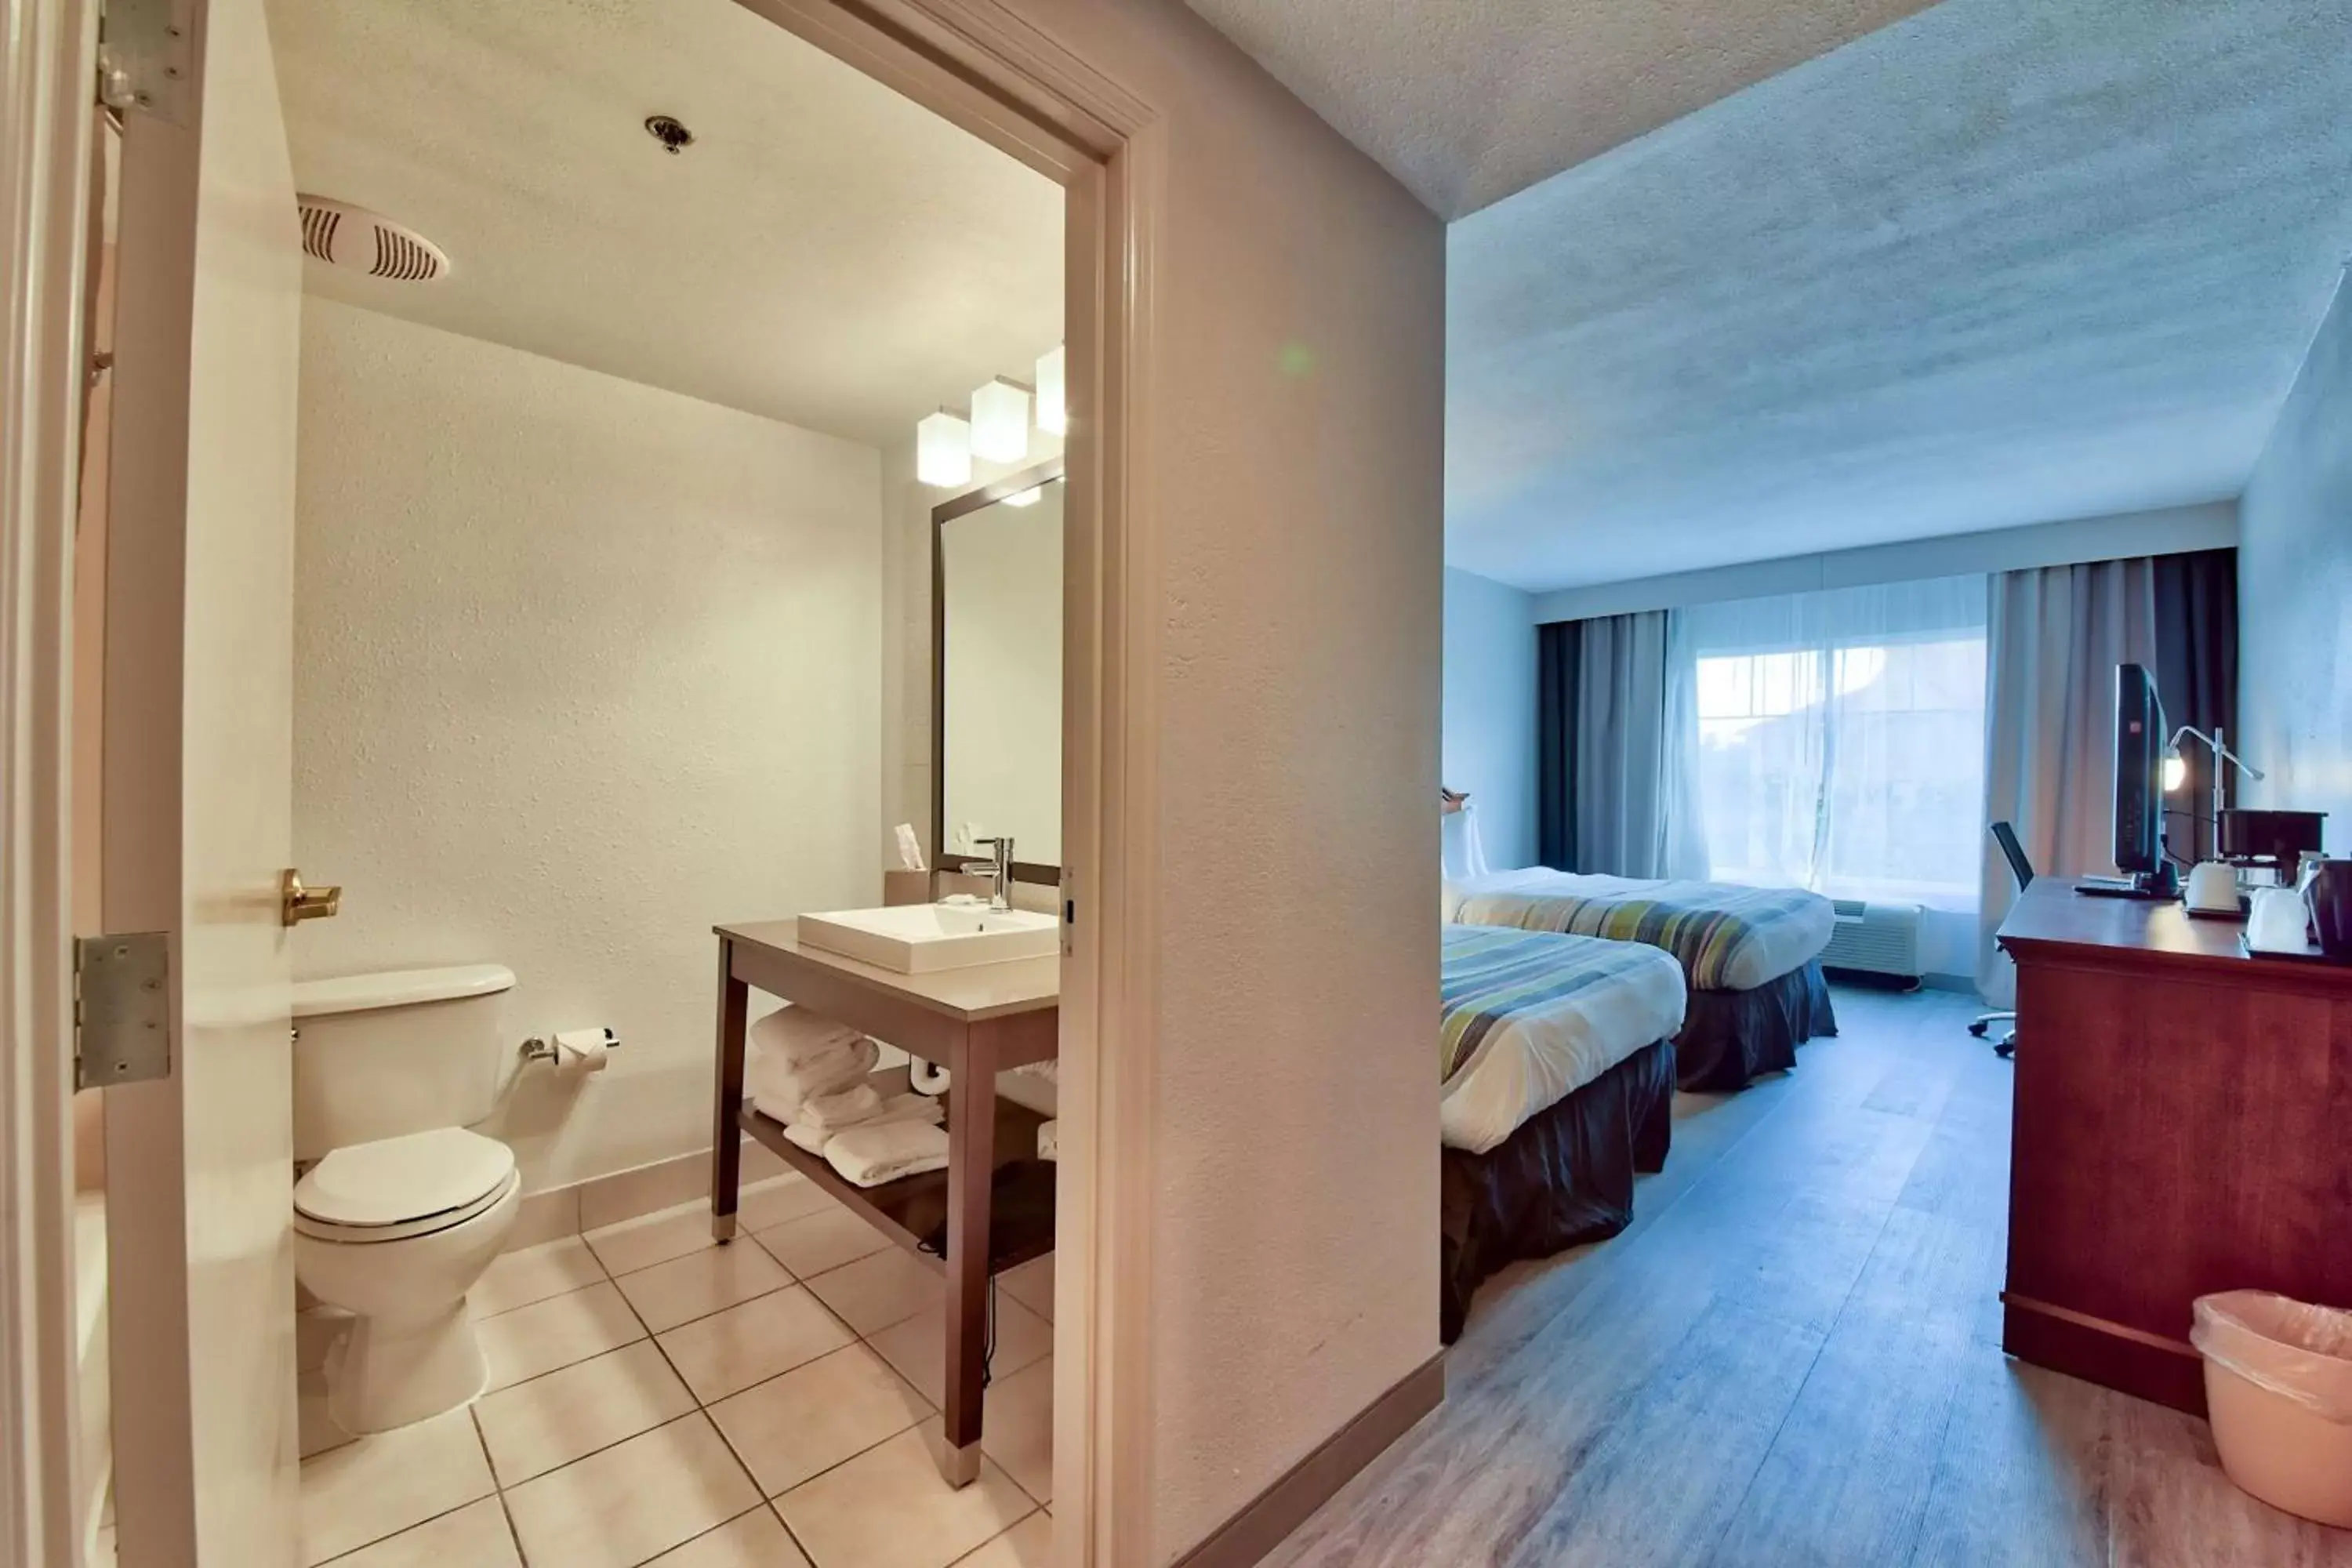 Bathroom in Country Inn & Suites by Radisson, Ocala, FL